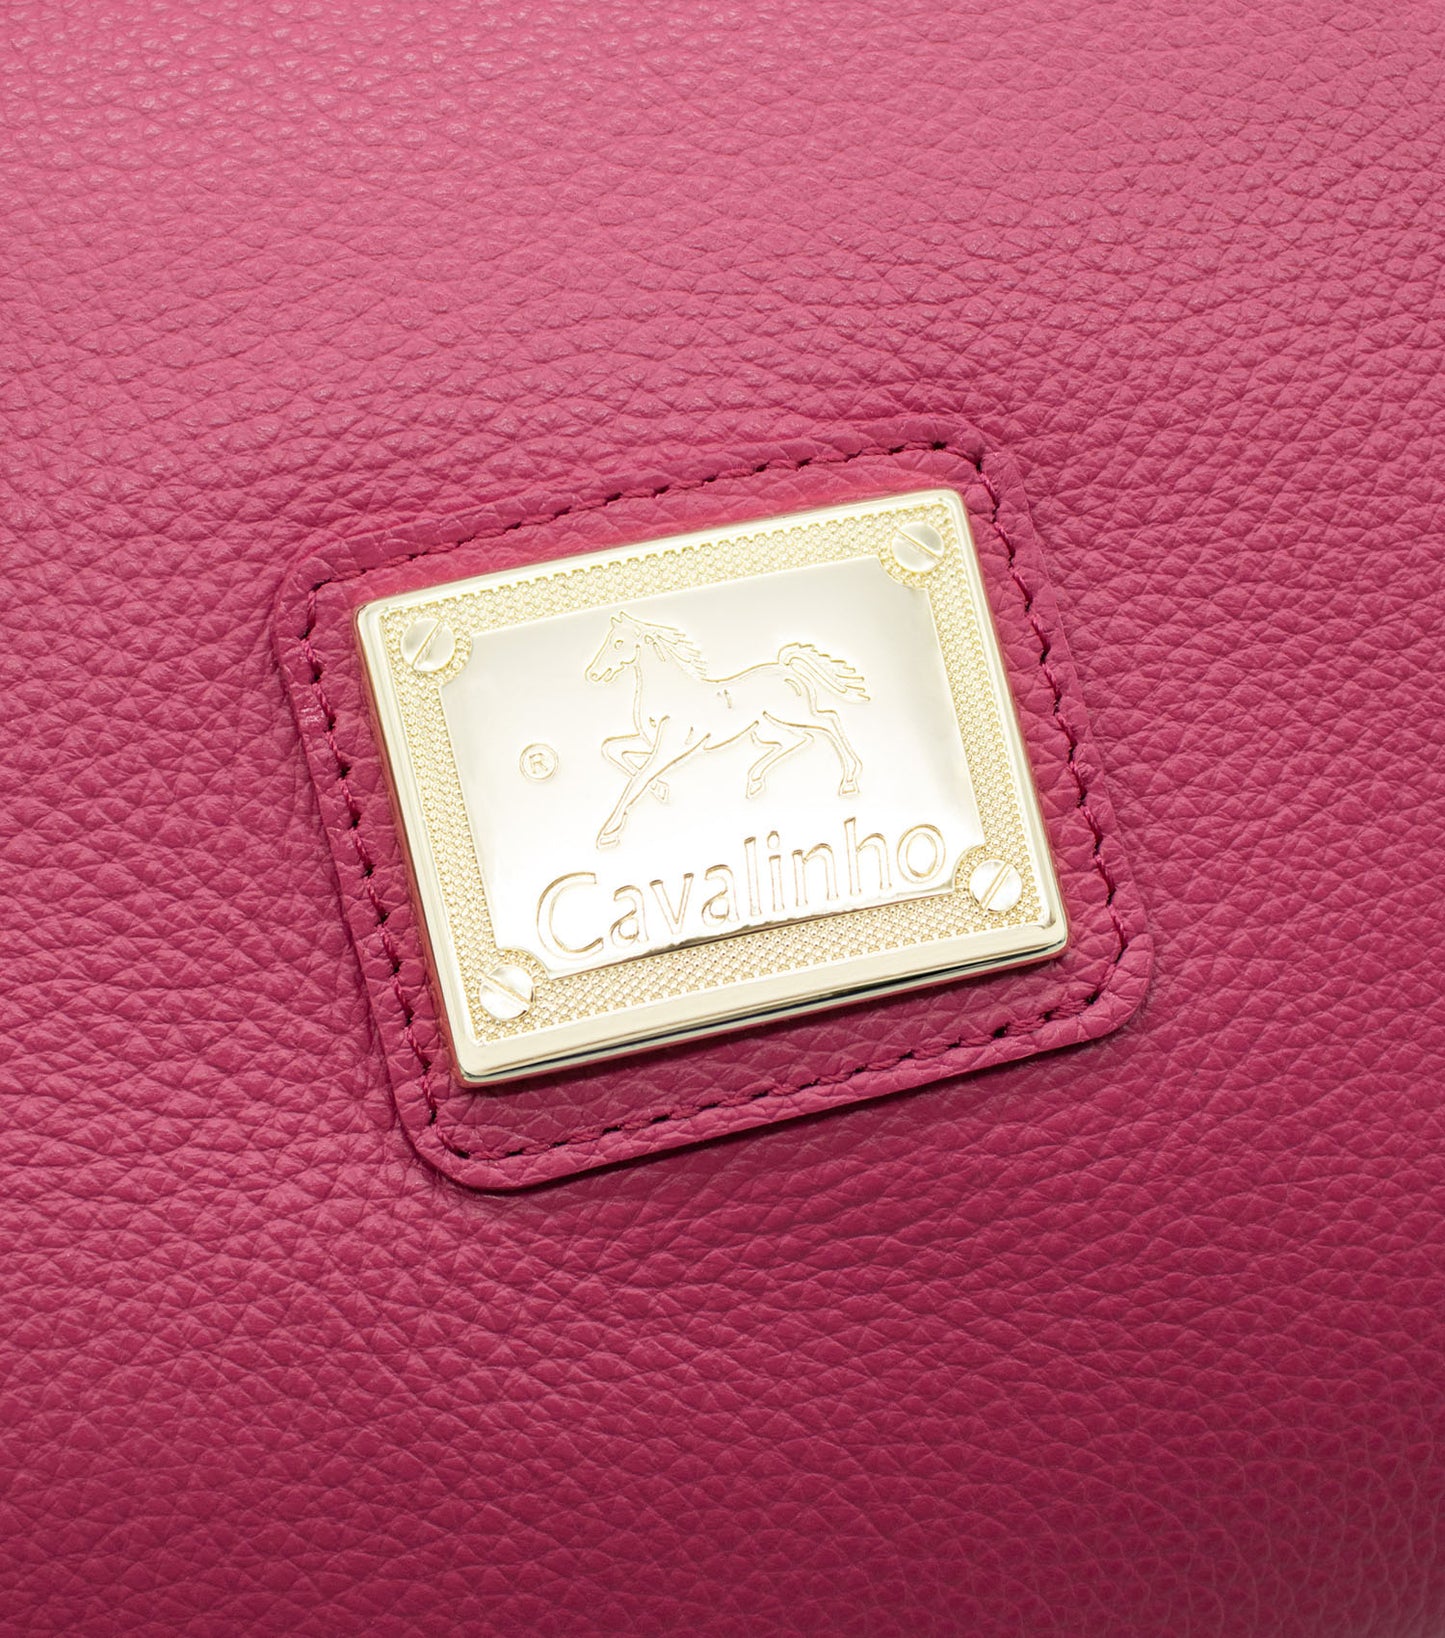 Cavalinho Muse Leather Handbag - HotPink - 18300490.18_P05